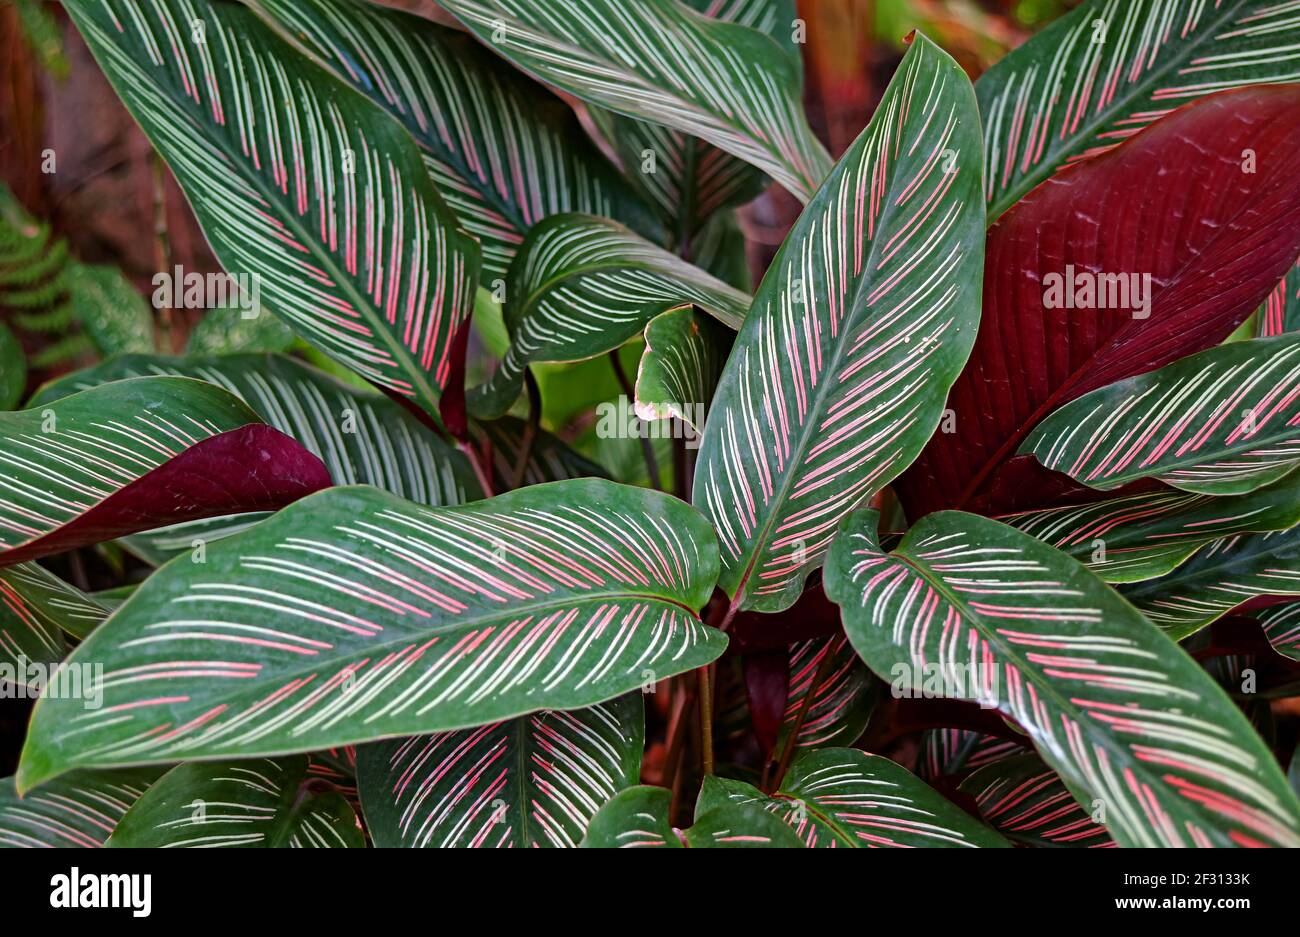 Nahaufnahme Dunkelgrün mit weißen und rosa Streifen Blätter Calathea  Sanderiana oder Pinstripe Calathea Stockfotografie - Alamy